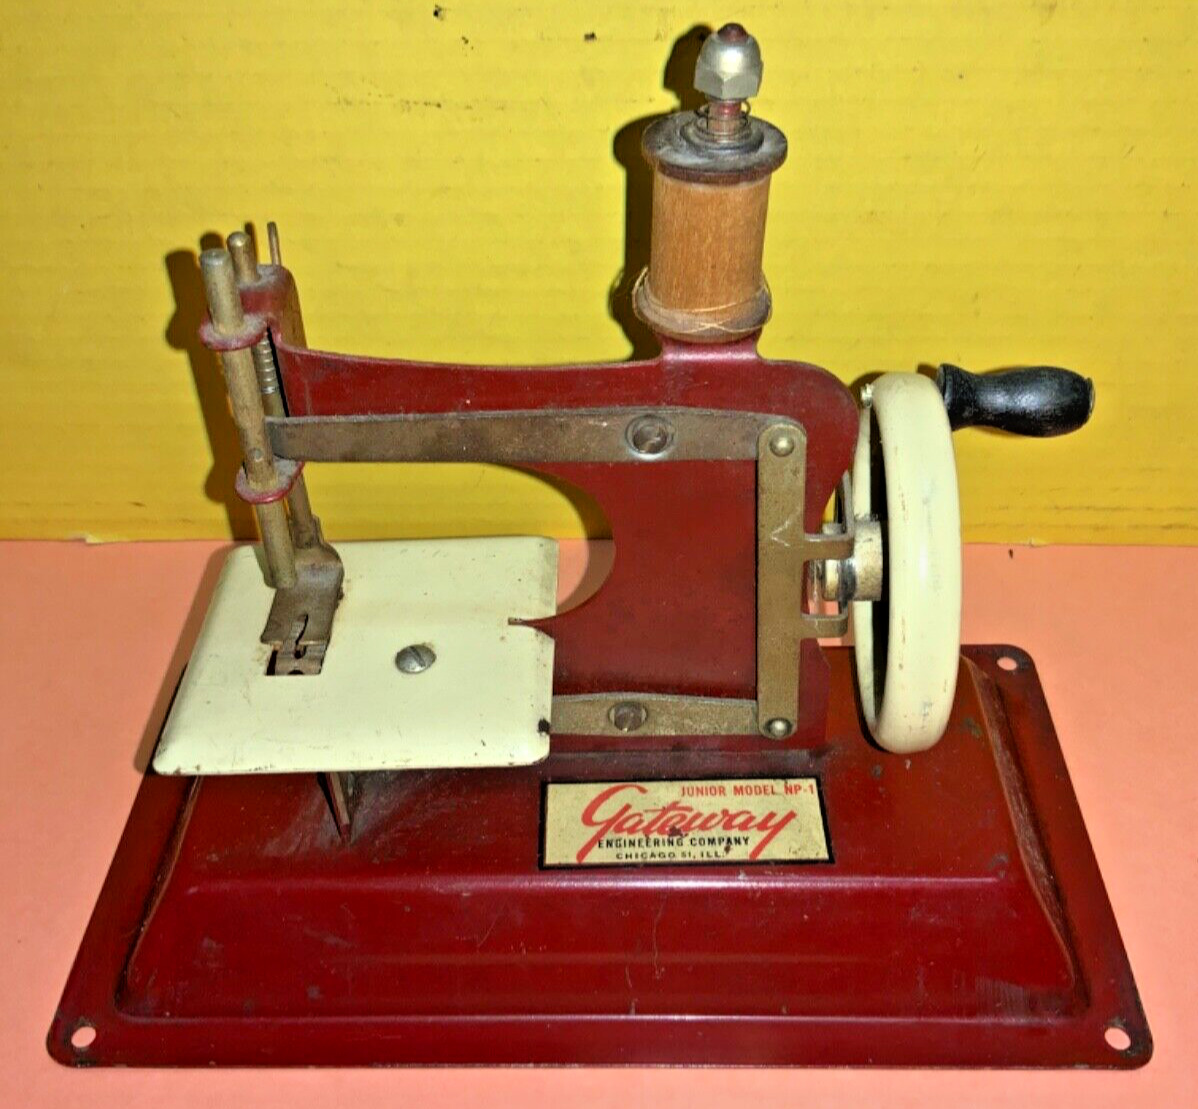 Vintage Gateway Engineering Co. Red Sewing Machine Junior Model NP-1 - AS IS